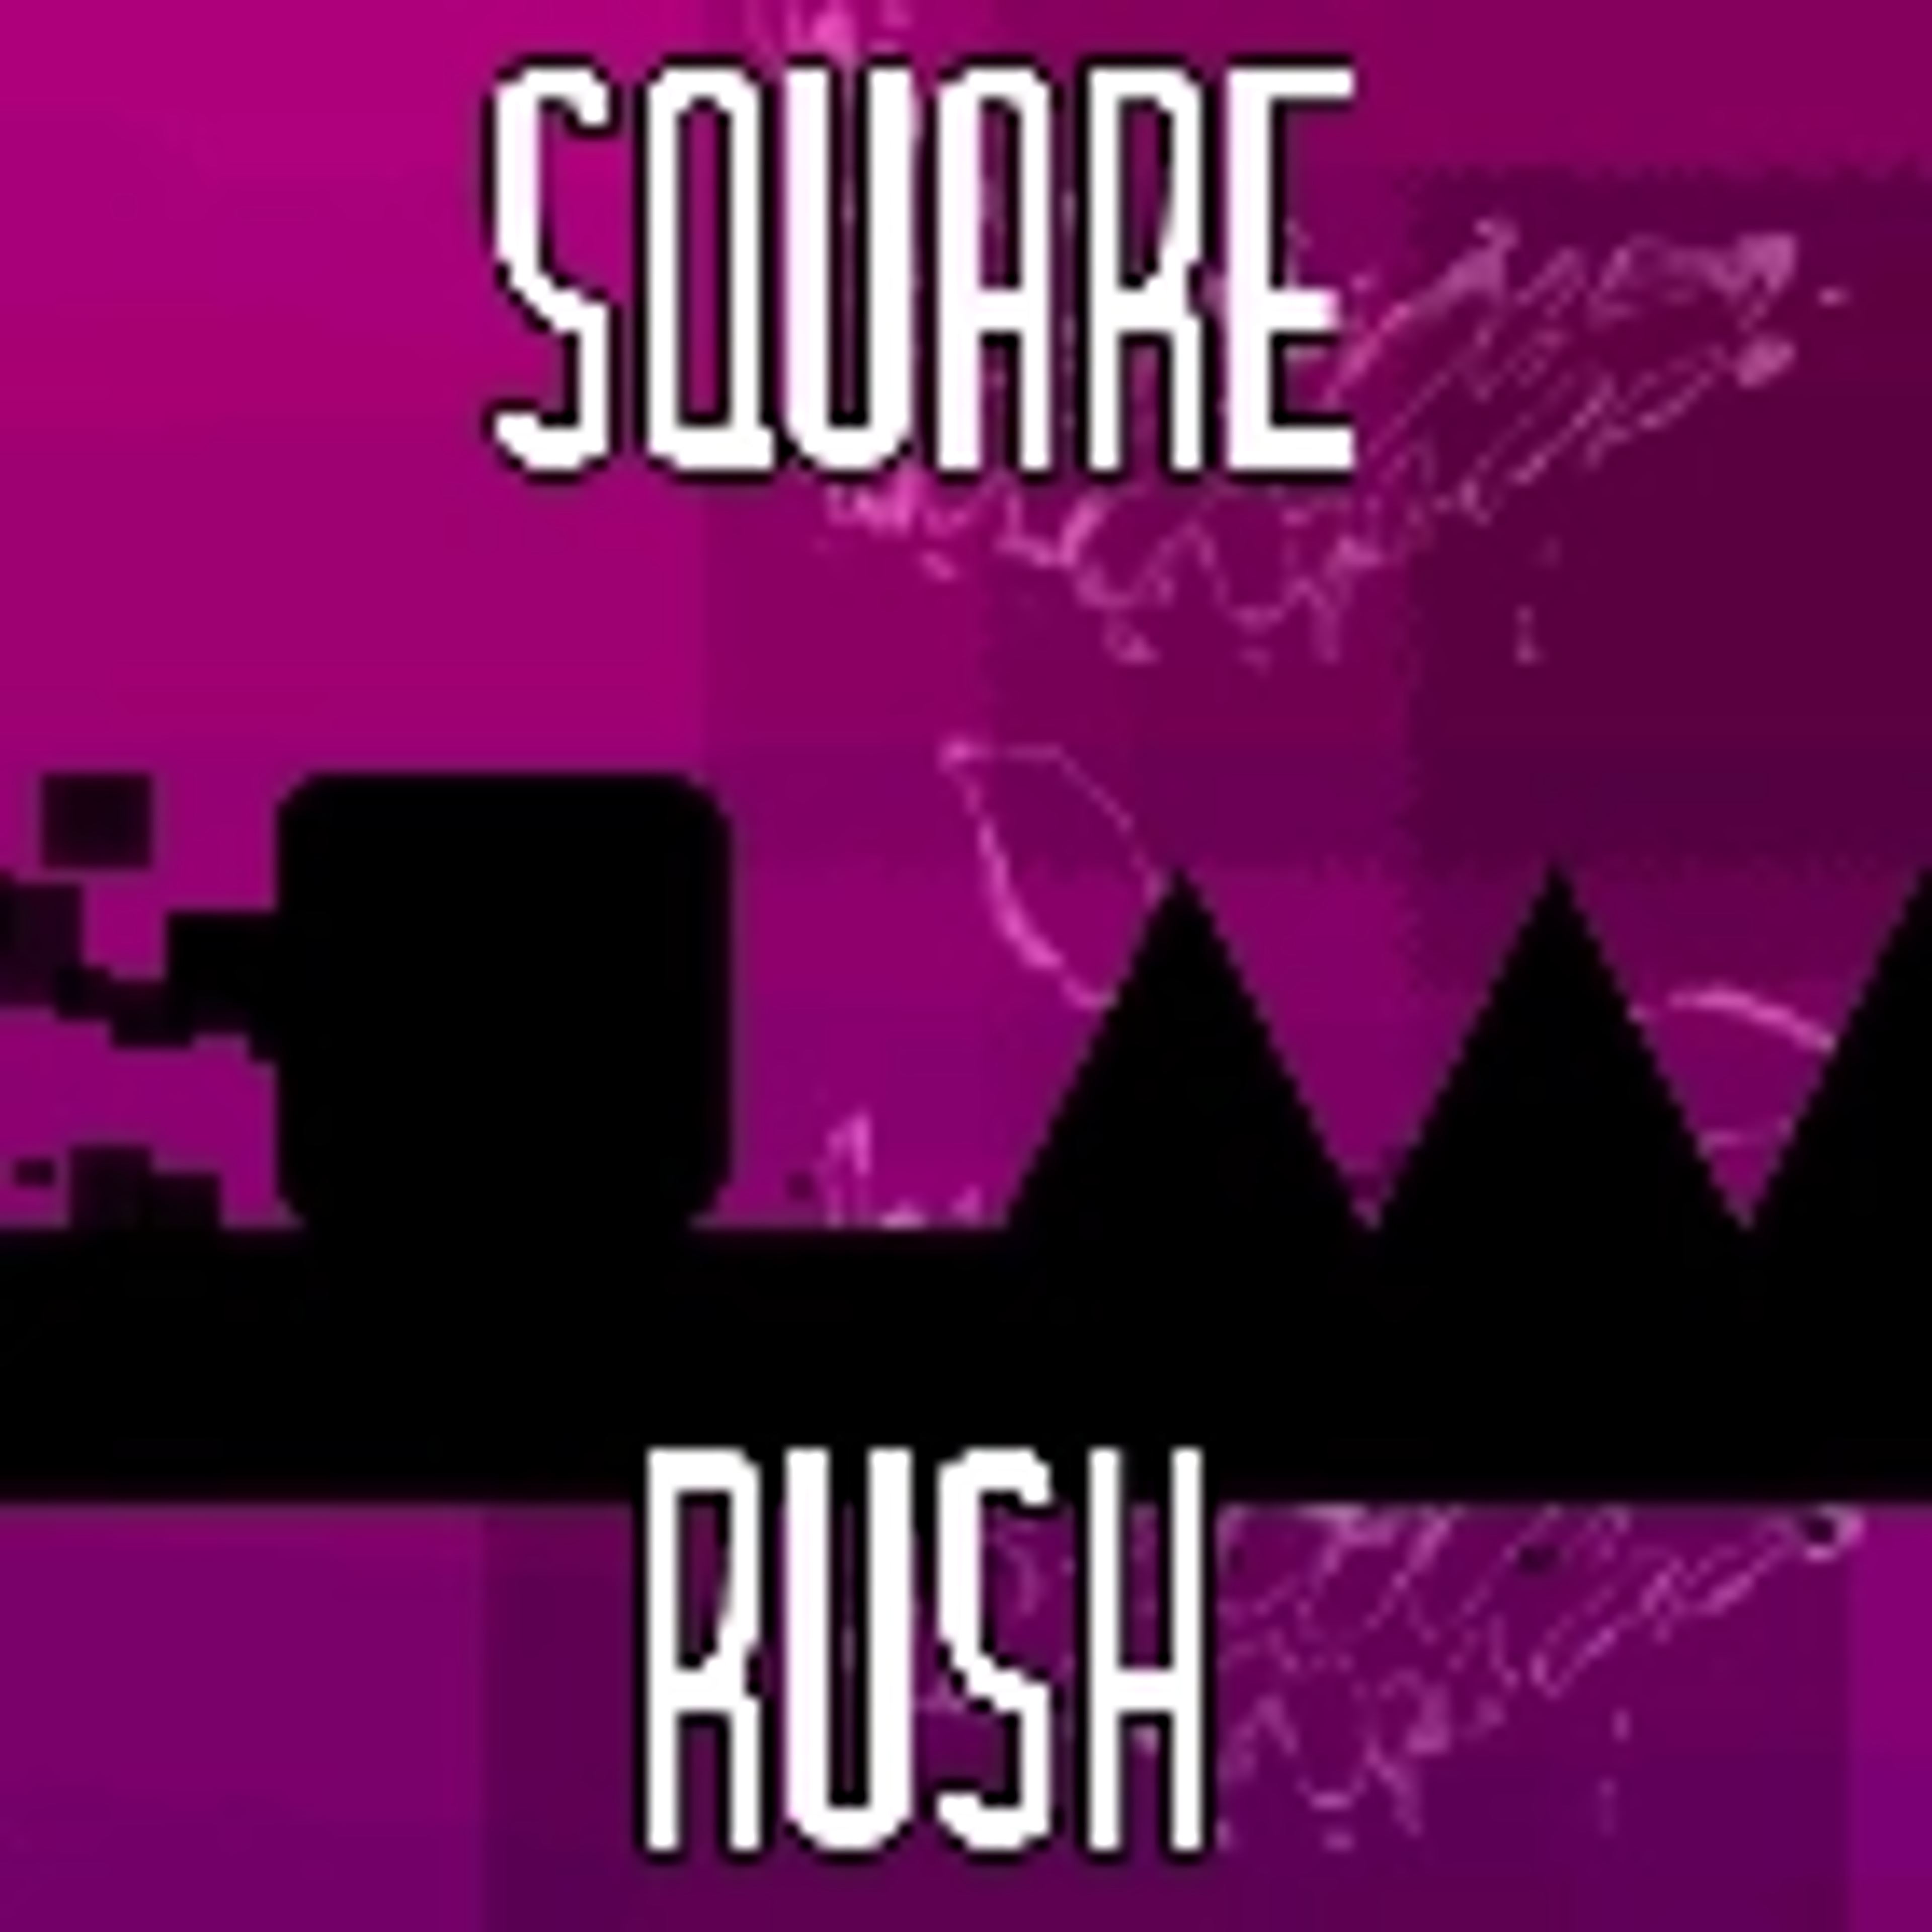 Square rush